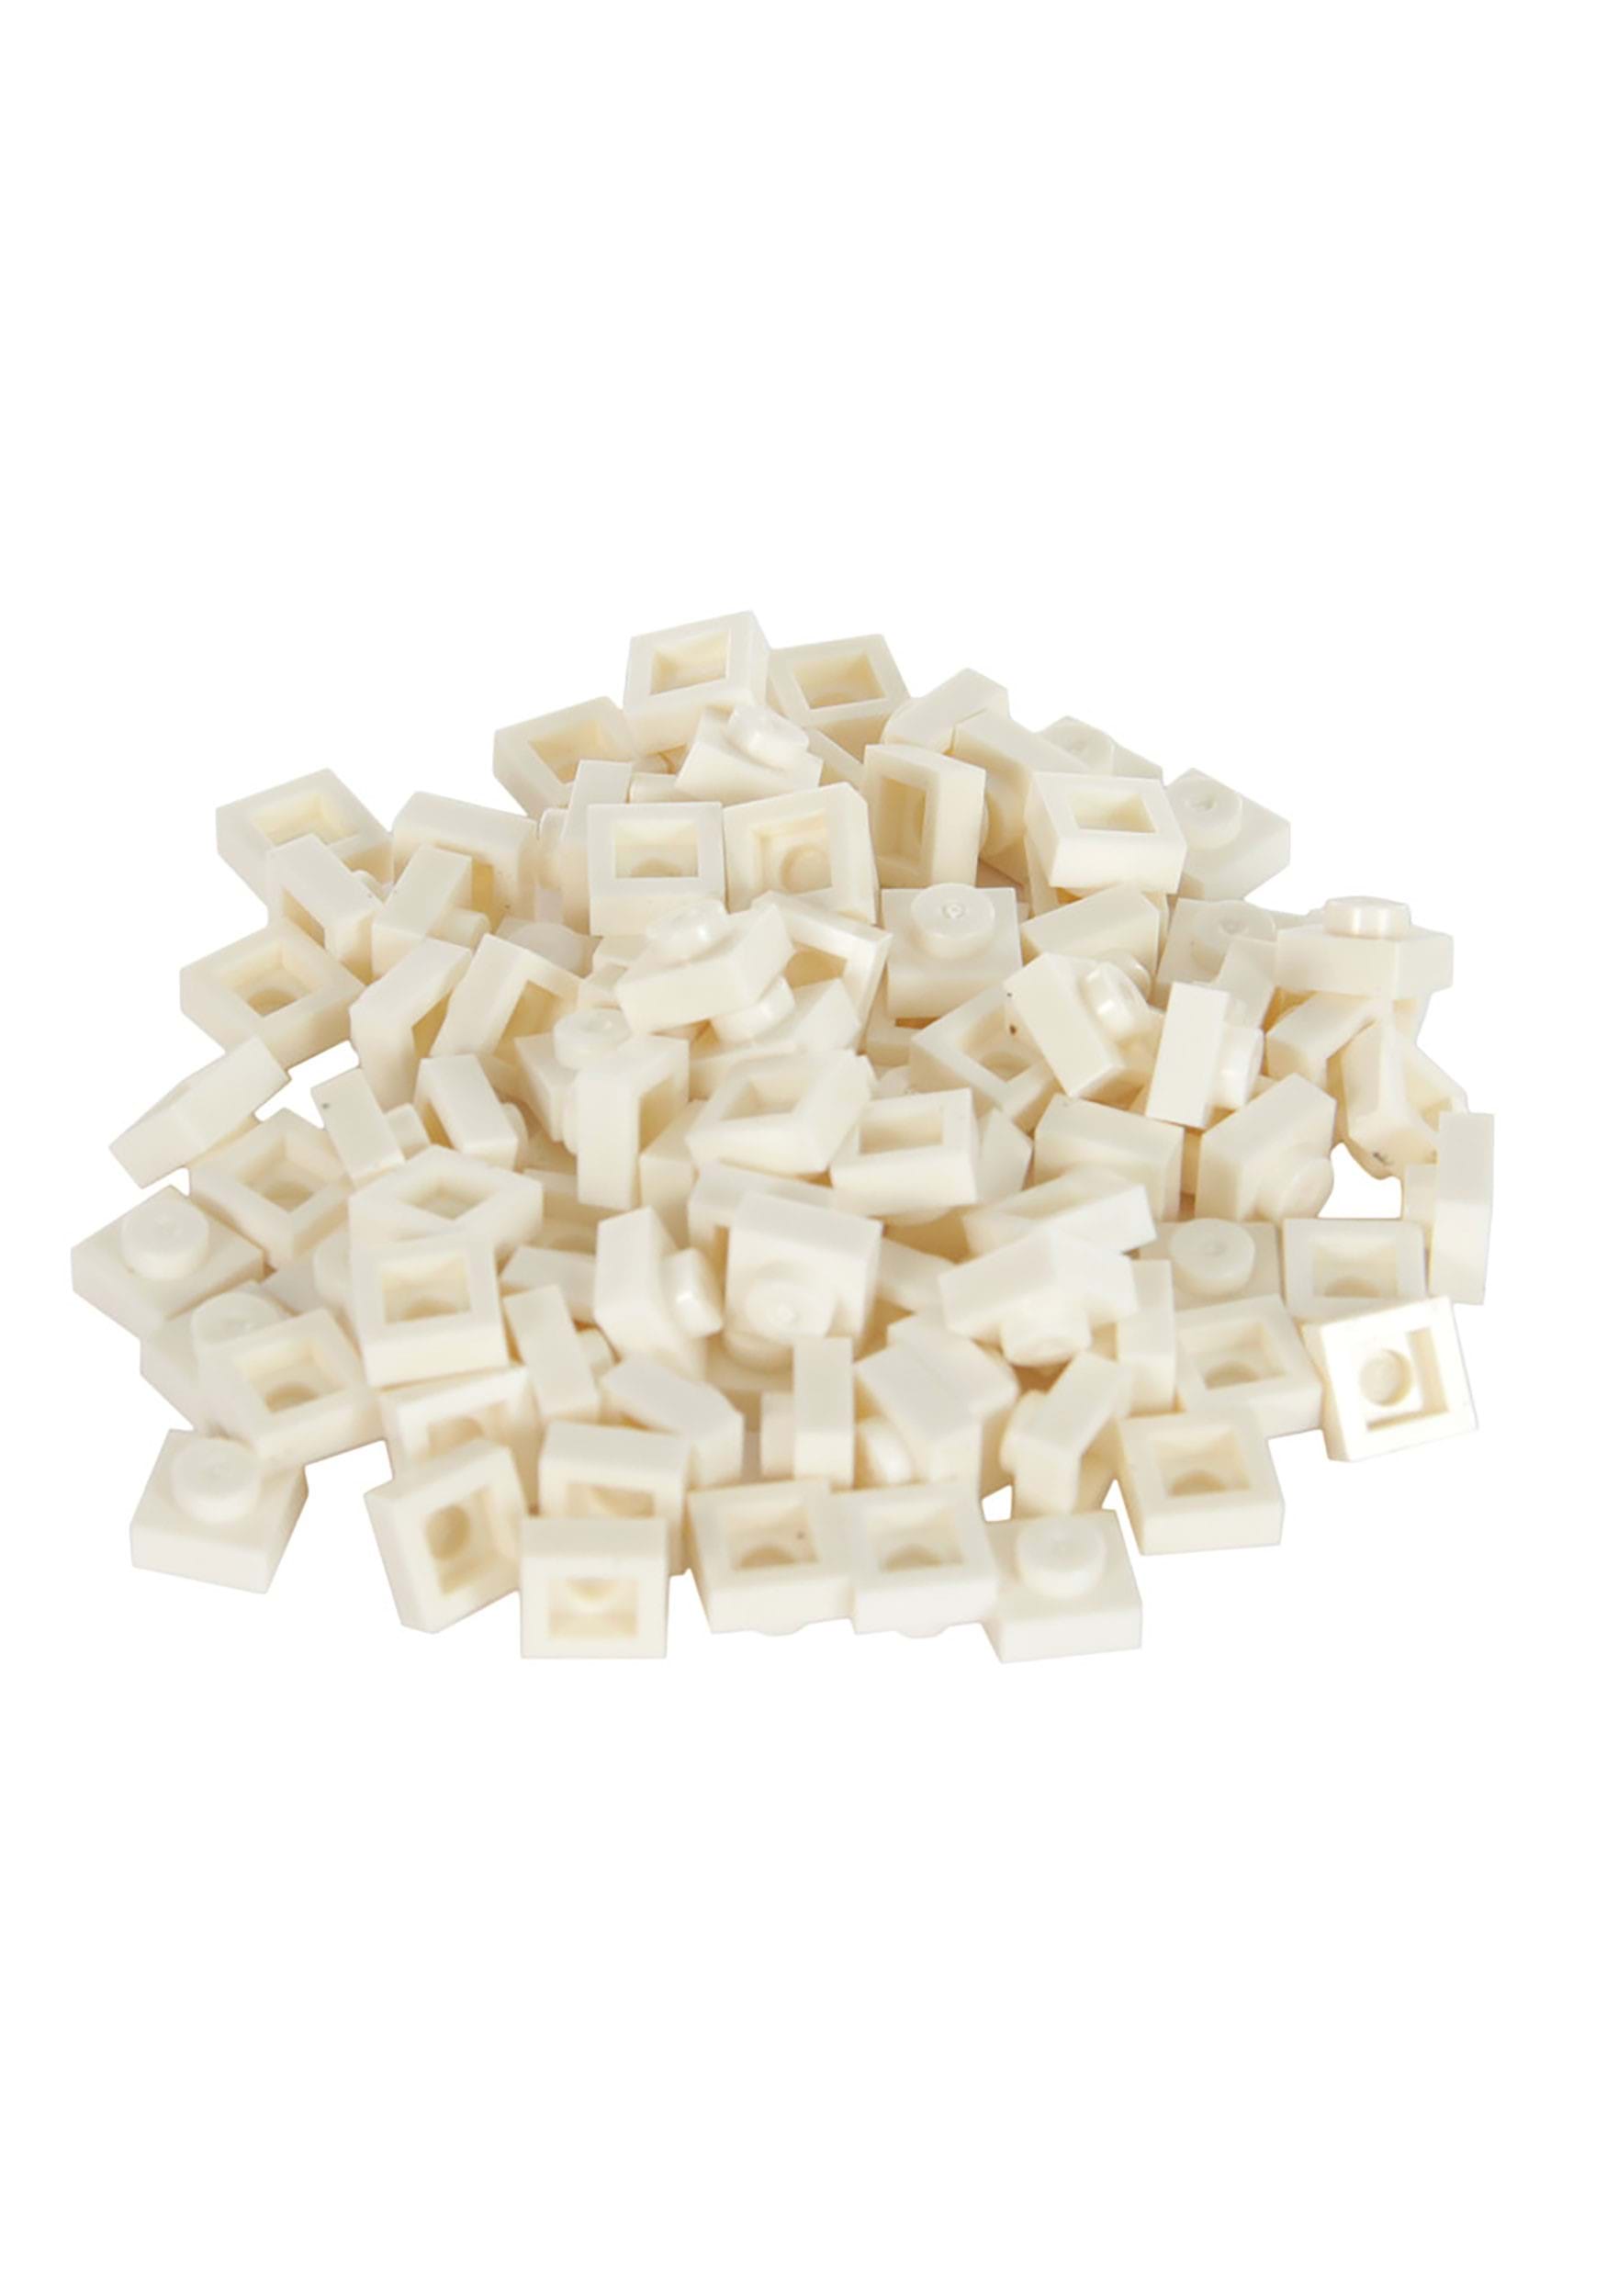 Bricky Blocks 100 Pieces 1×1 White